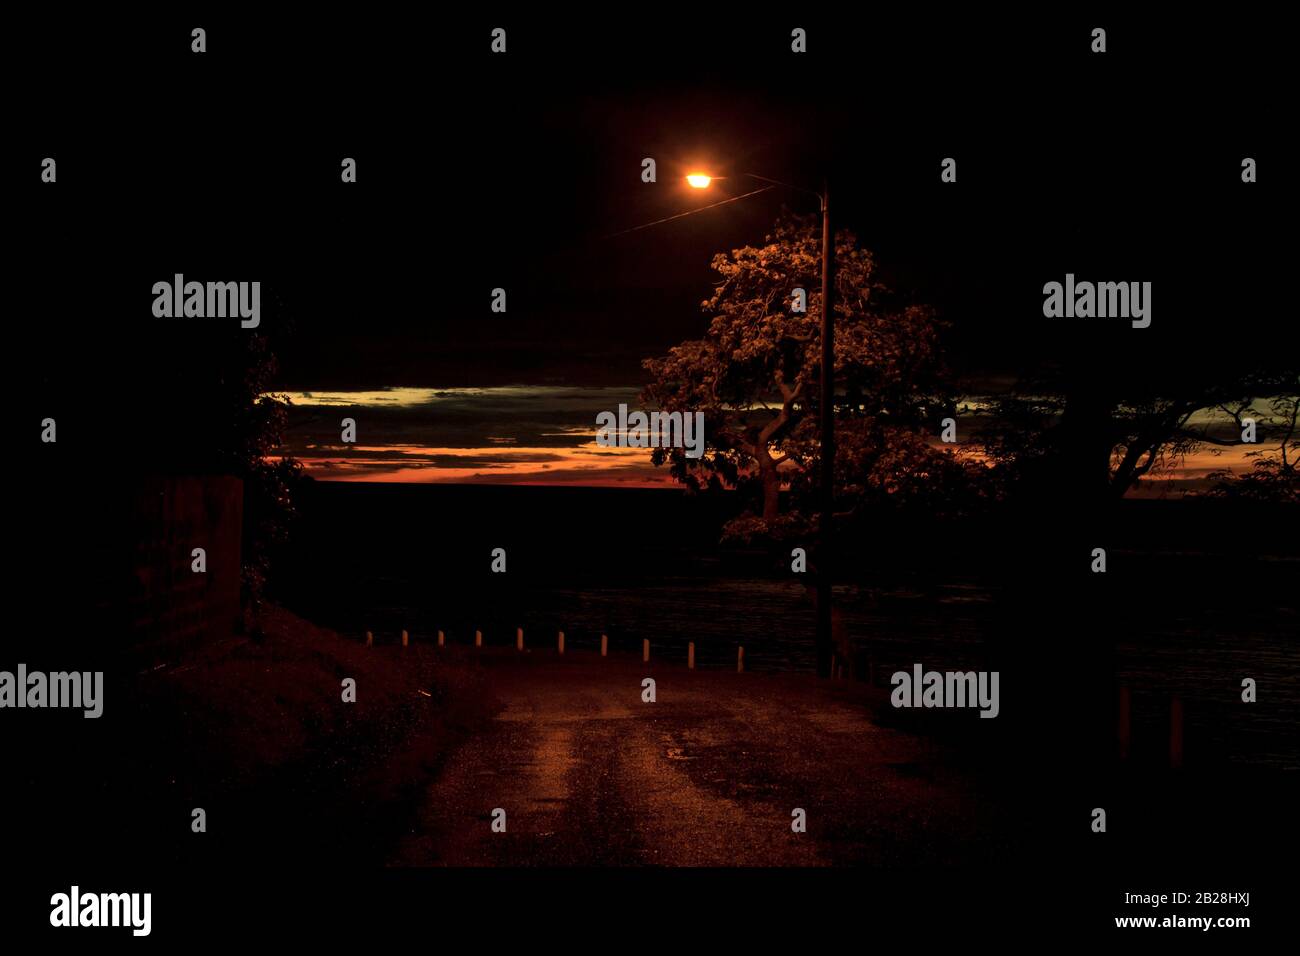 Dunkle Nacht, einsame Straße, gelbes Licht von der einzigen Straßenleuchte, weiße Pfosten am Rand, Reste eines schönen Sonnenuntergangs auf der Straße nach Tapion Stockfoto